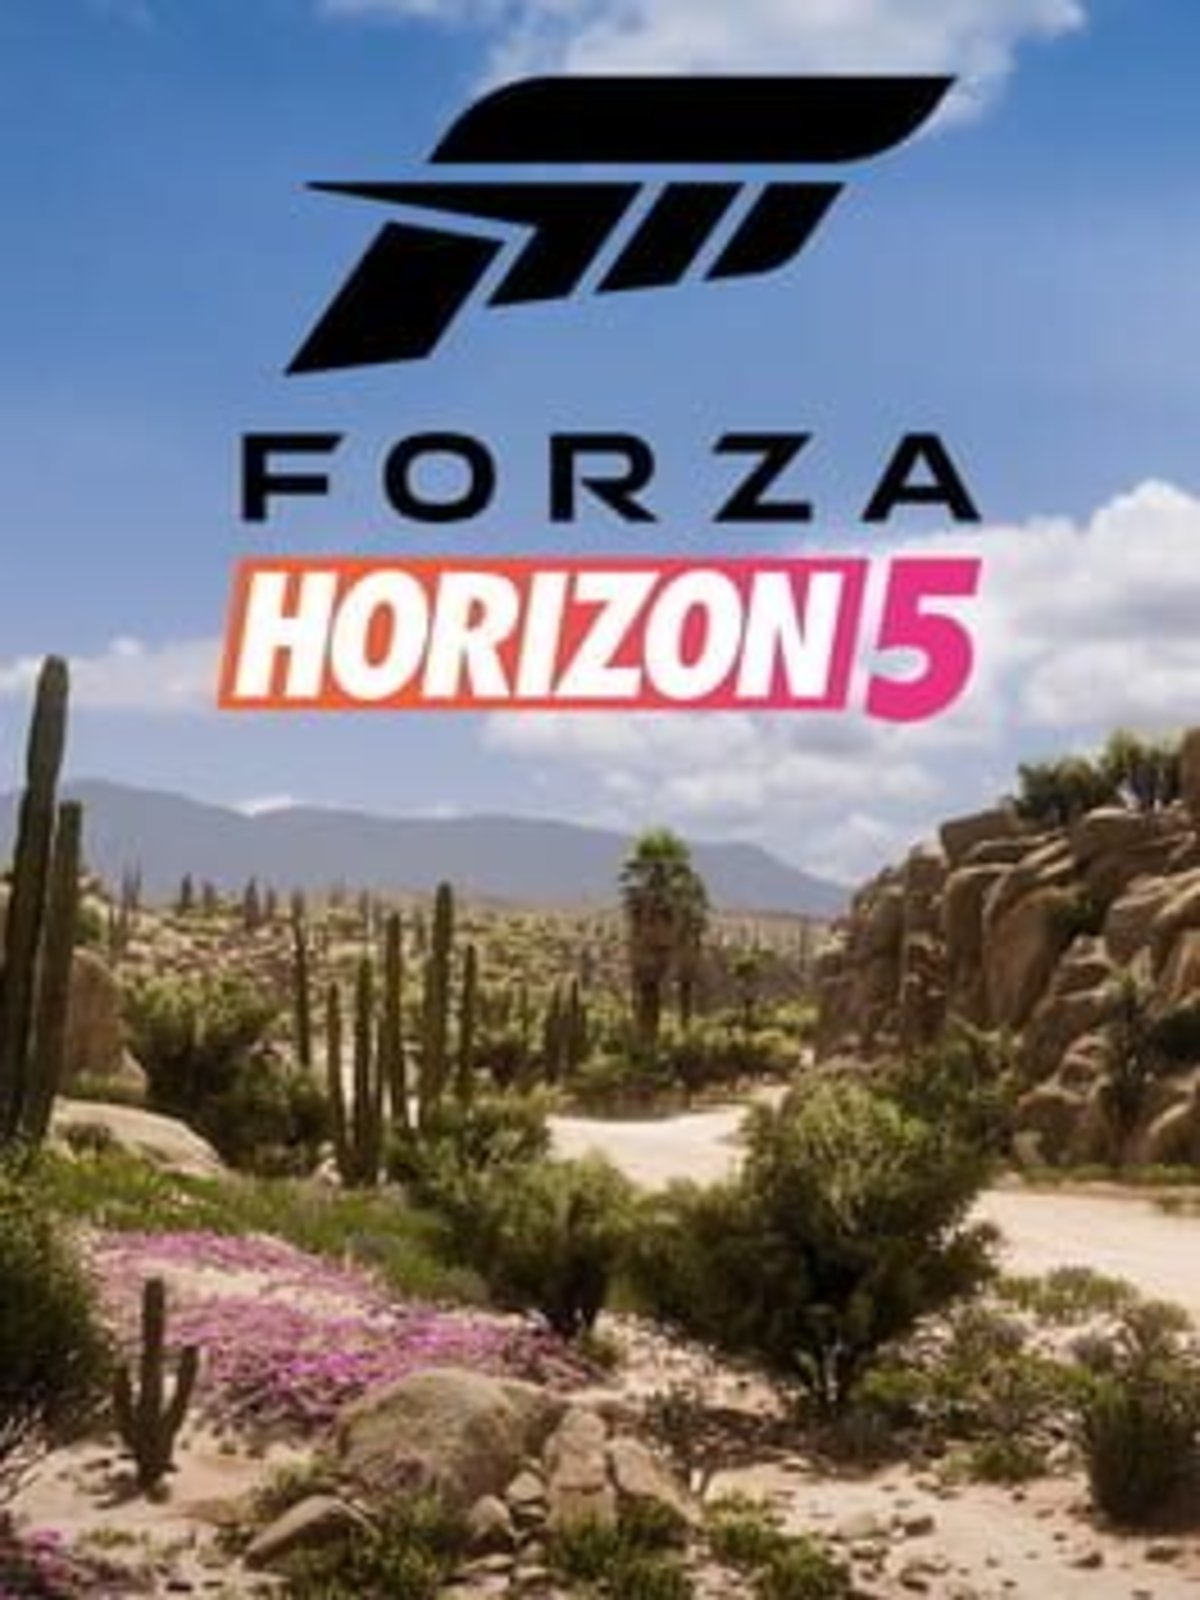 Forza Horizon 5 will use raytracing to improve audio